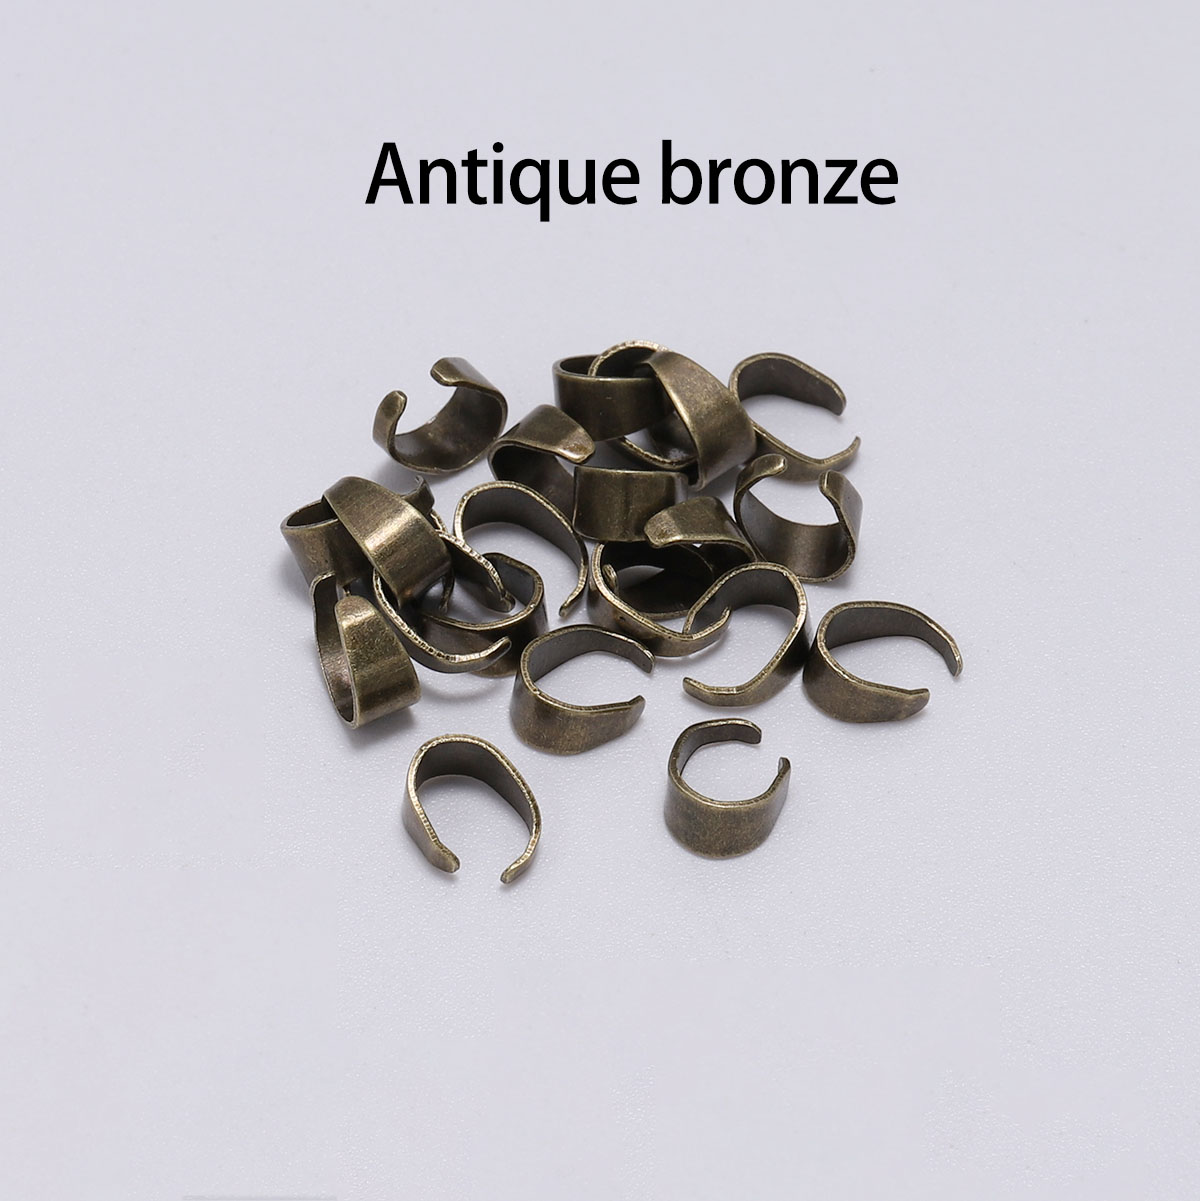 3:color de bronce antiguo